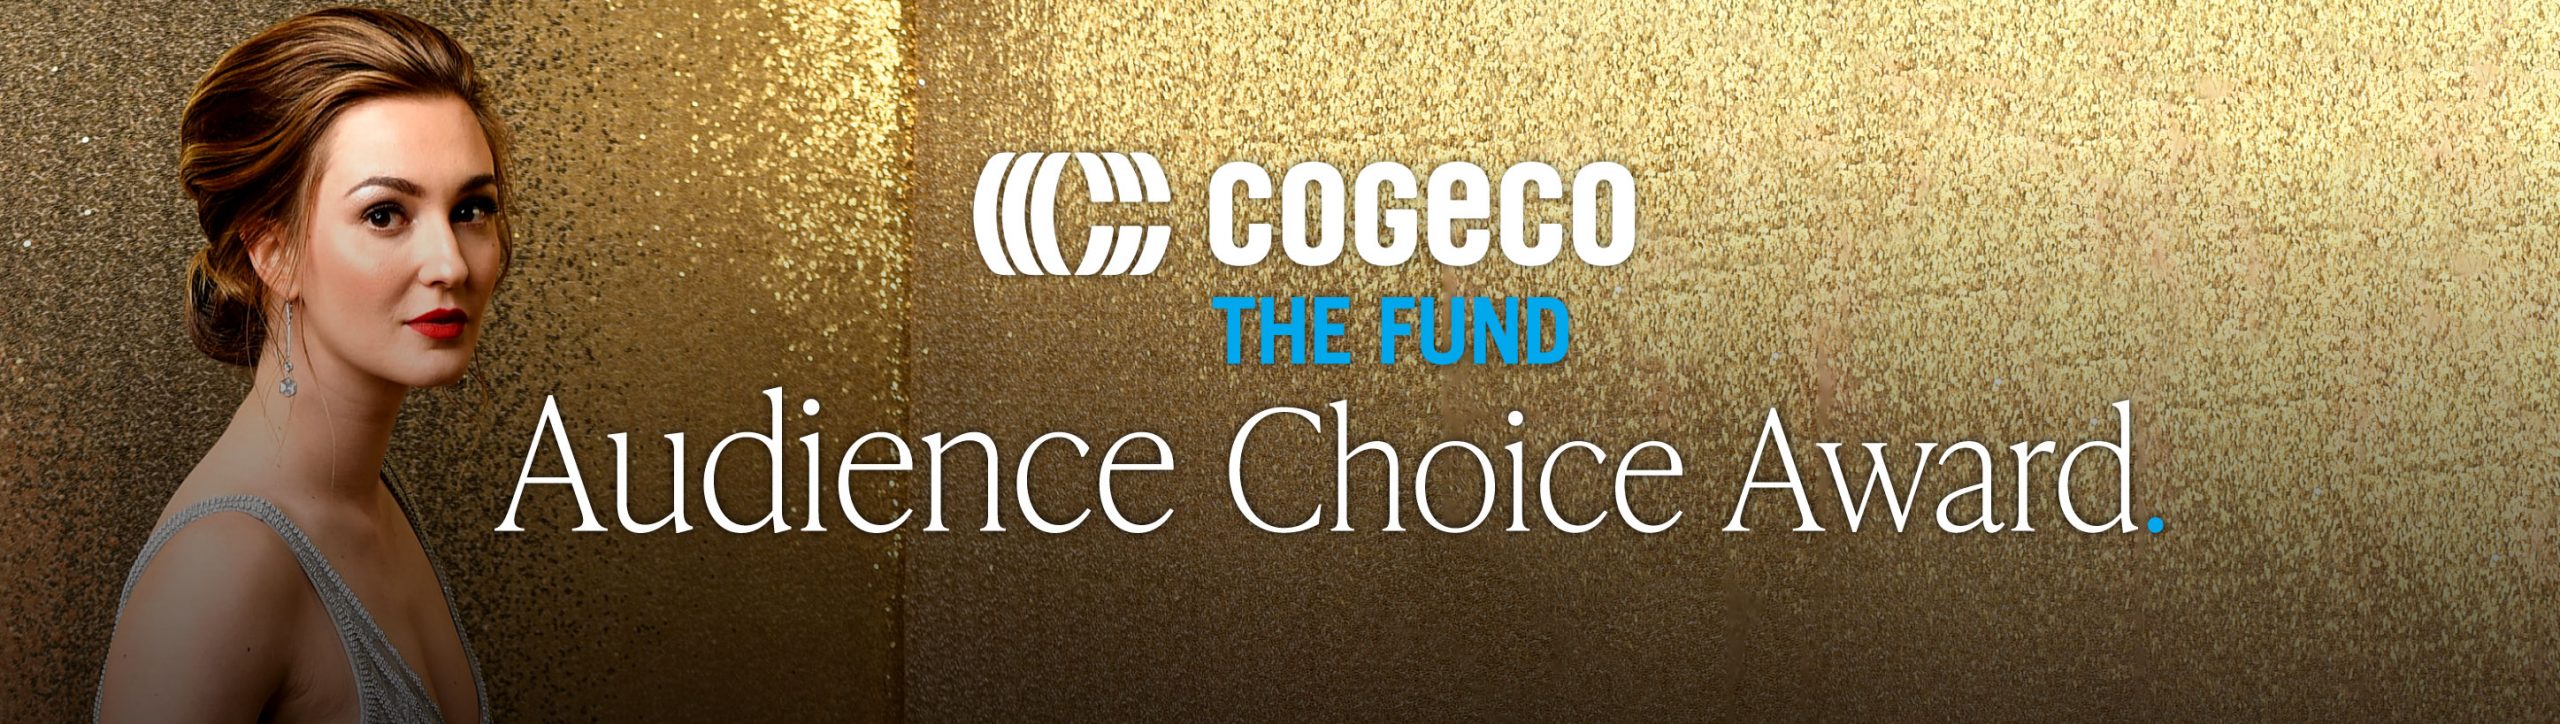 Uncategorized Archives Cogeco Fund Audience Choice Award Cogeco